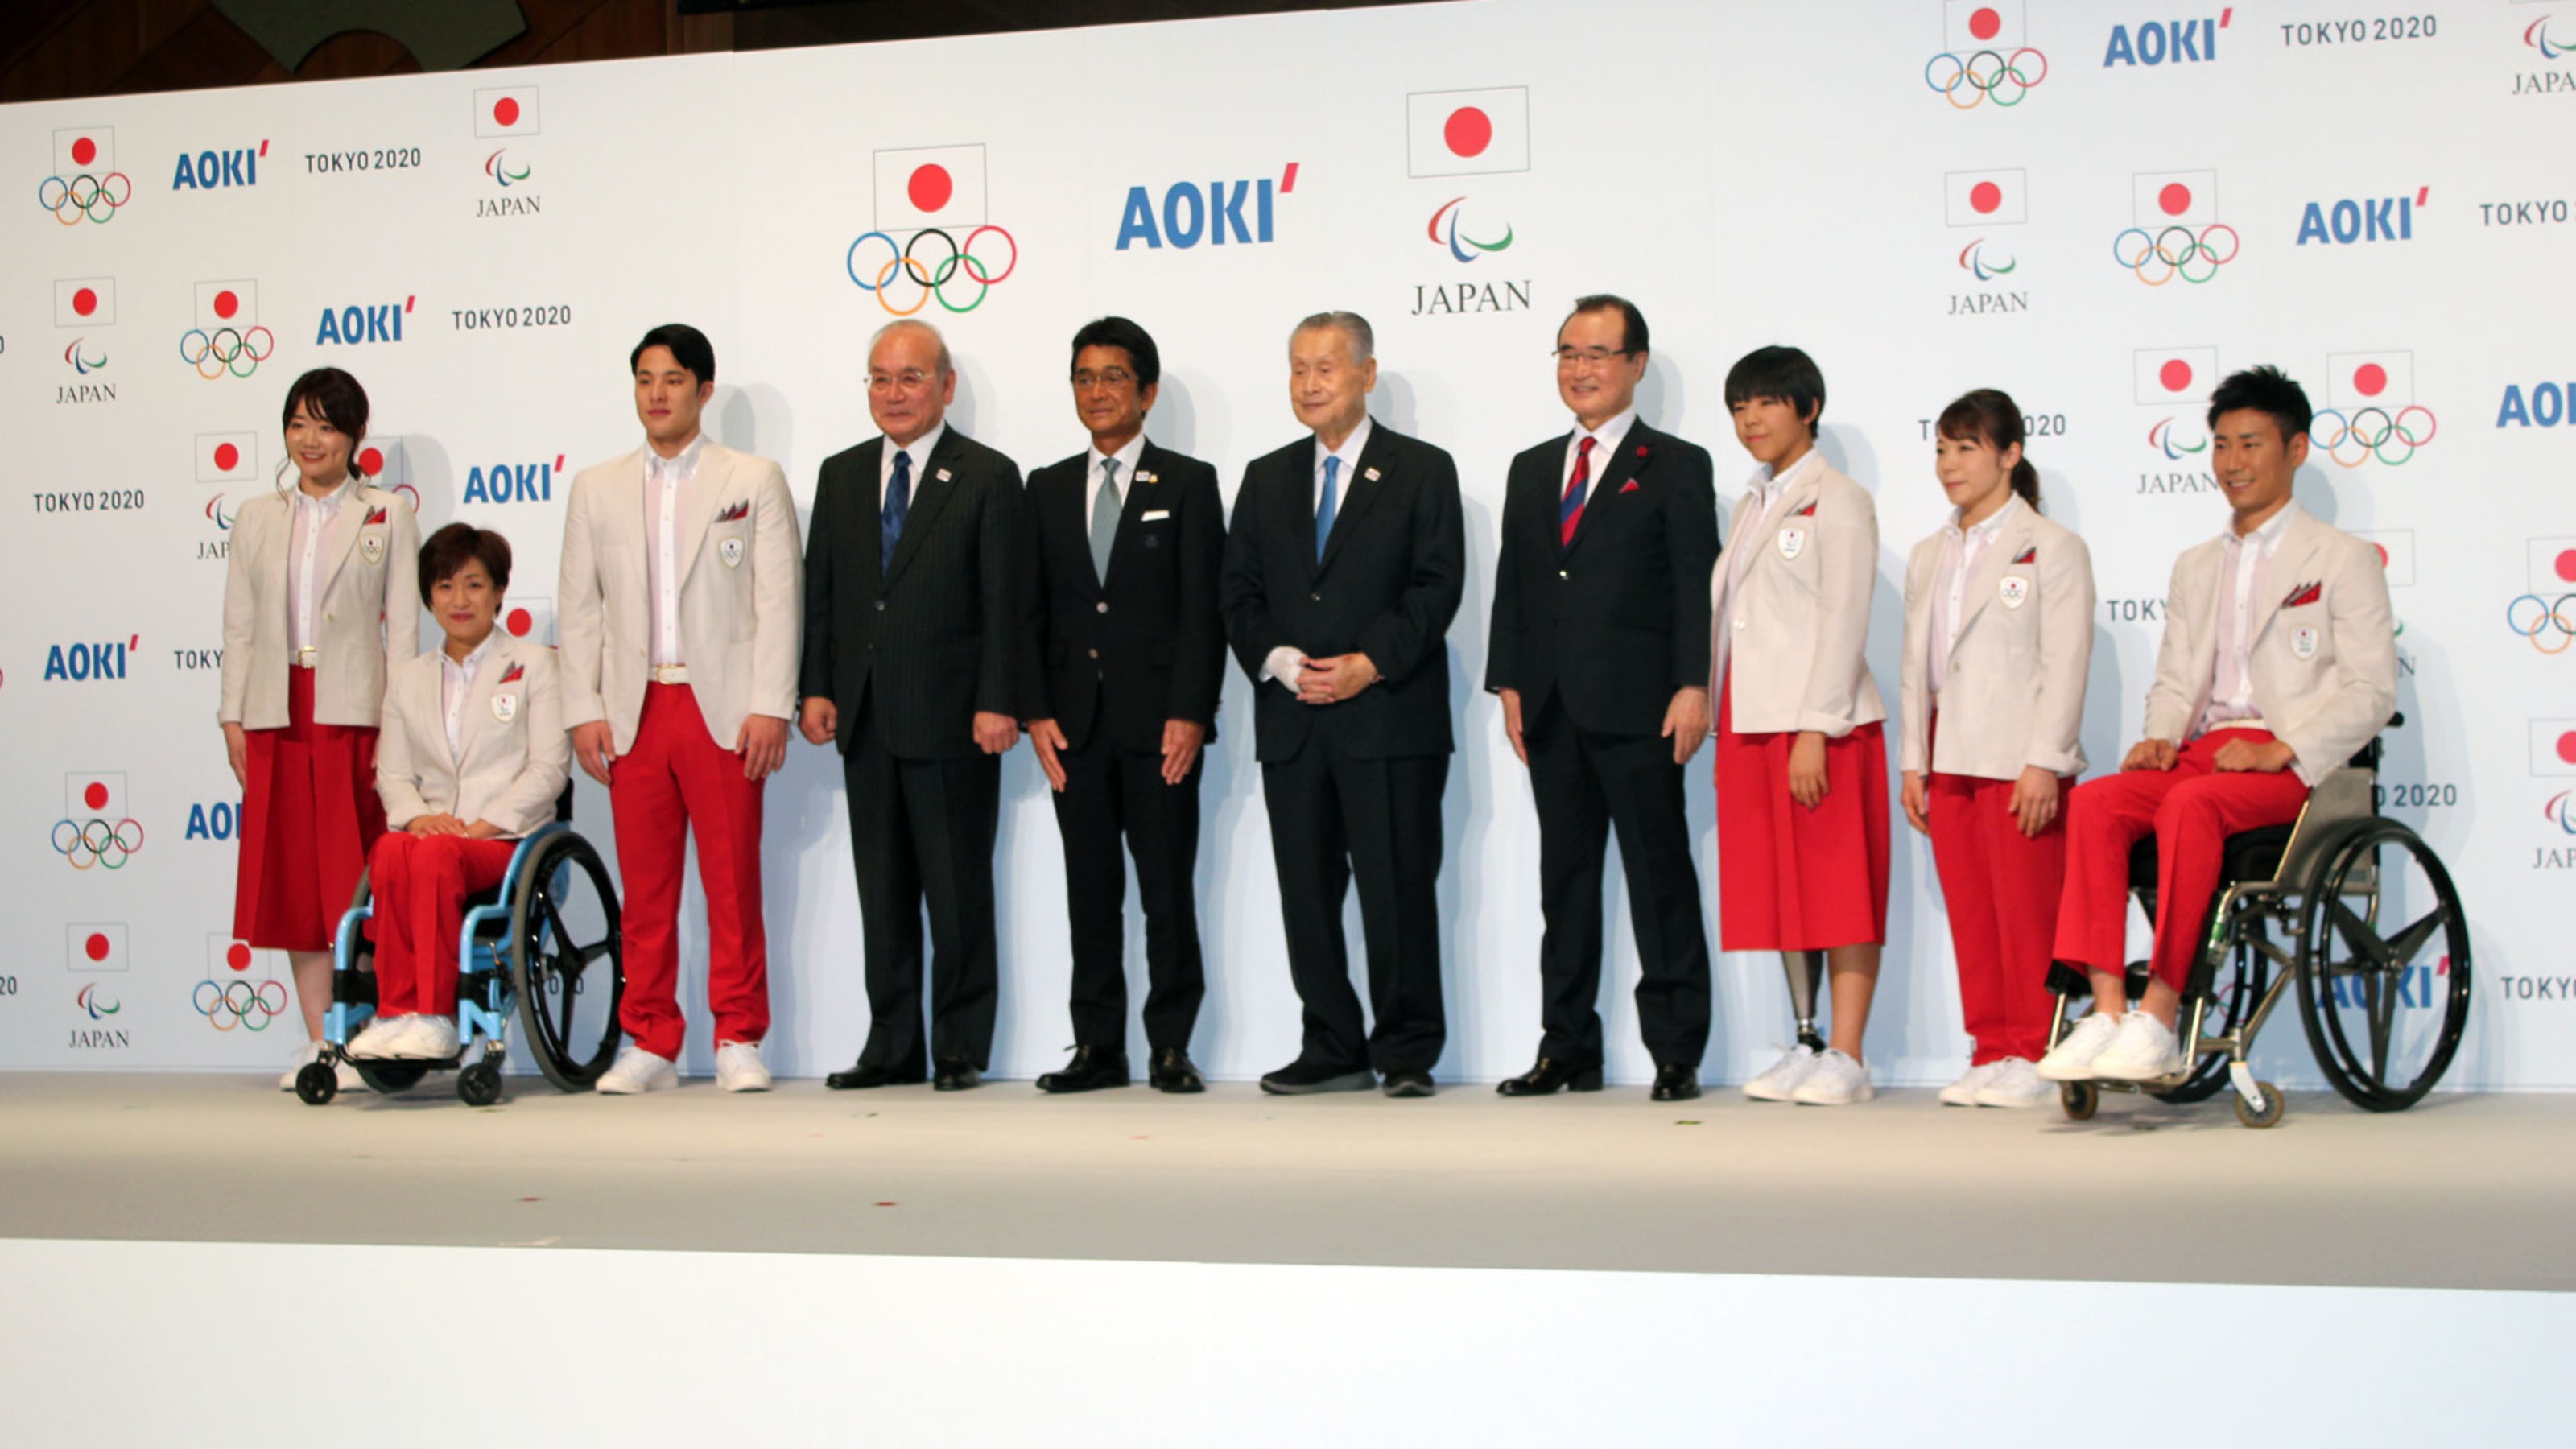 日本代表選手団公式服装 テクニカルオフィシャルユニフォームを発表 東京五輪